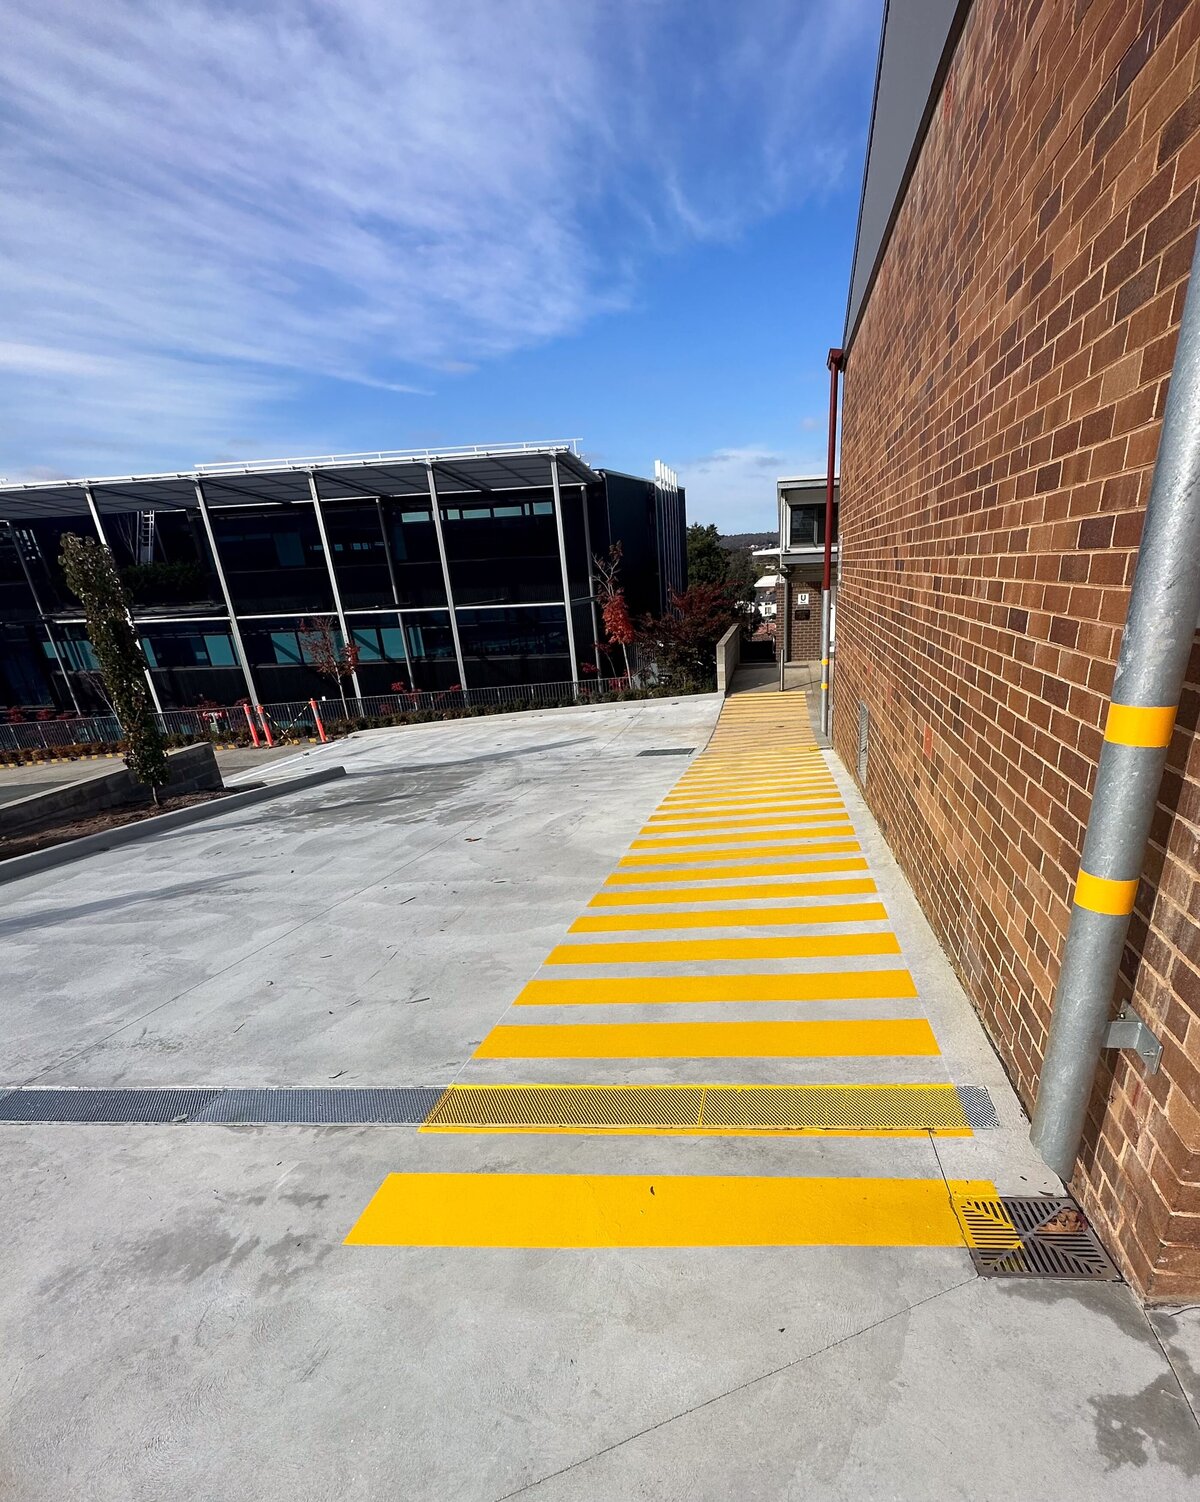 Pedestrial walkway linemarkings.